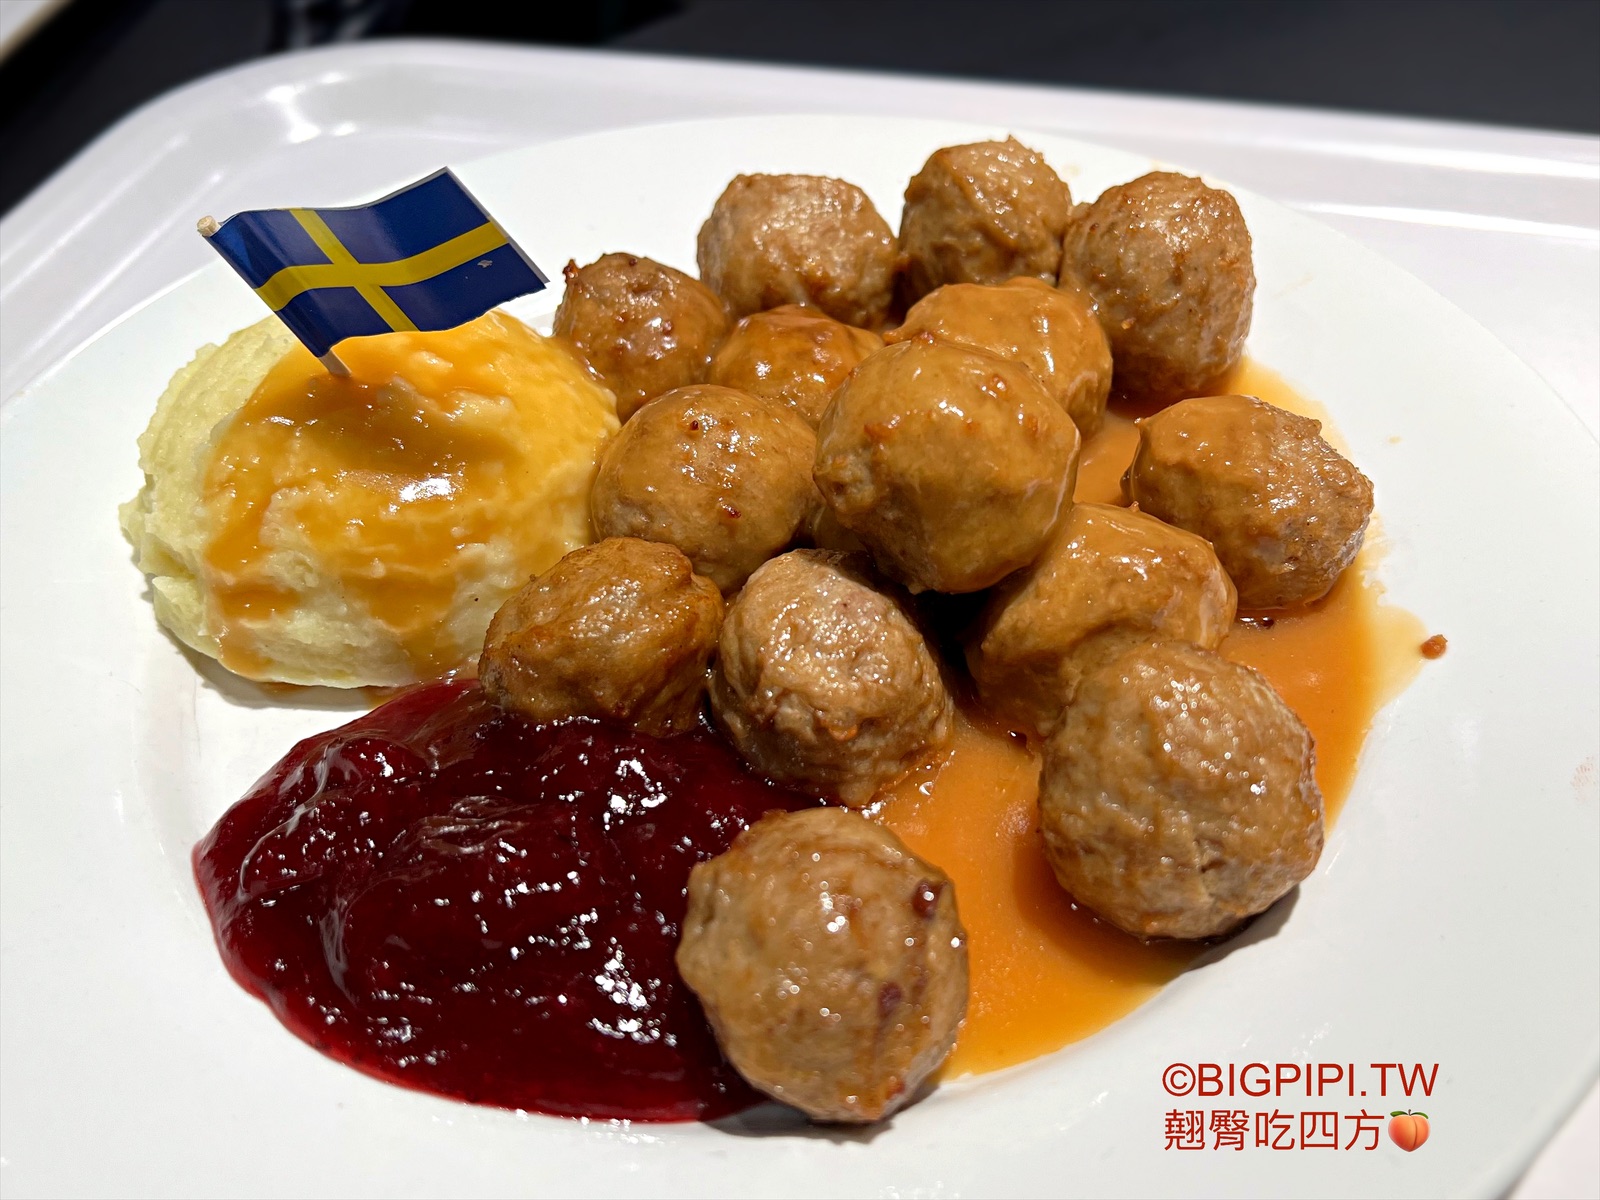 【小巨蛋美食】IKEA 瑞典餐廳，IKEA餐廳推薦 瑞典肉丸 鯊寶包（菜單） @翹臀吃四方